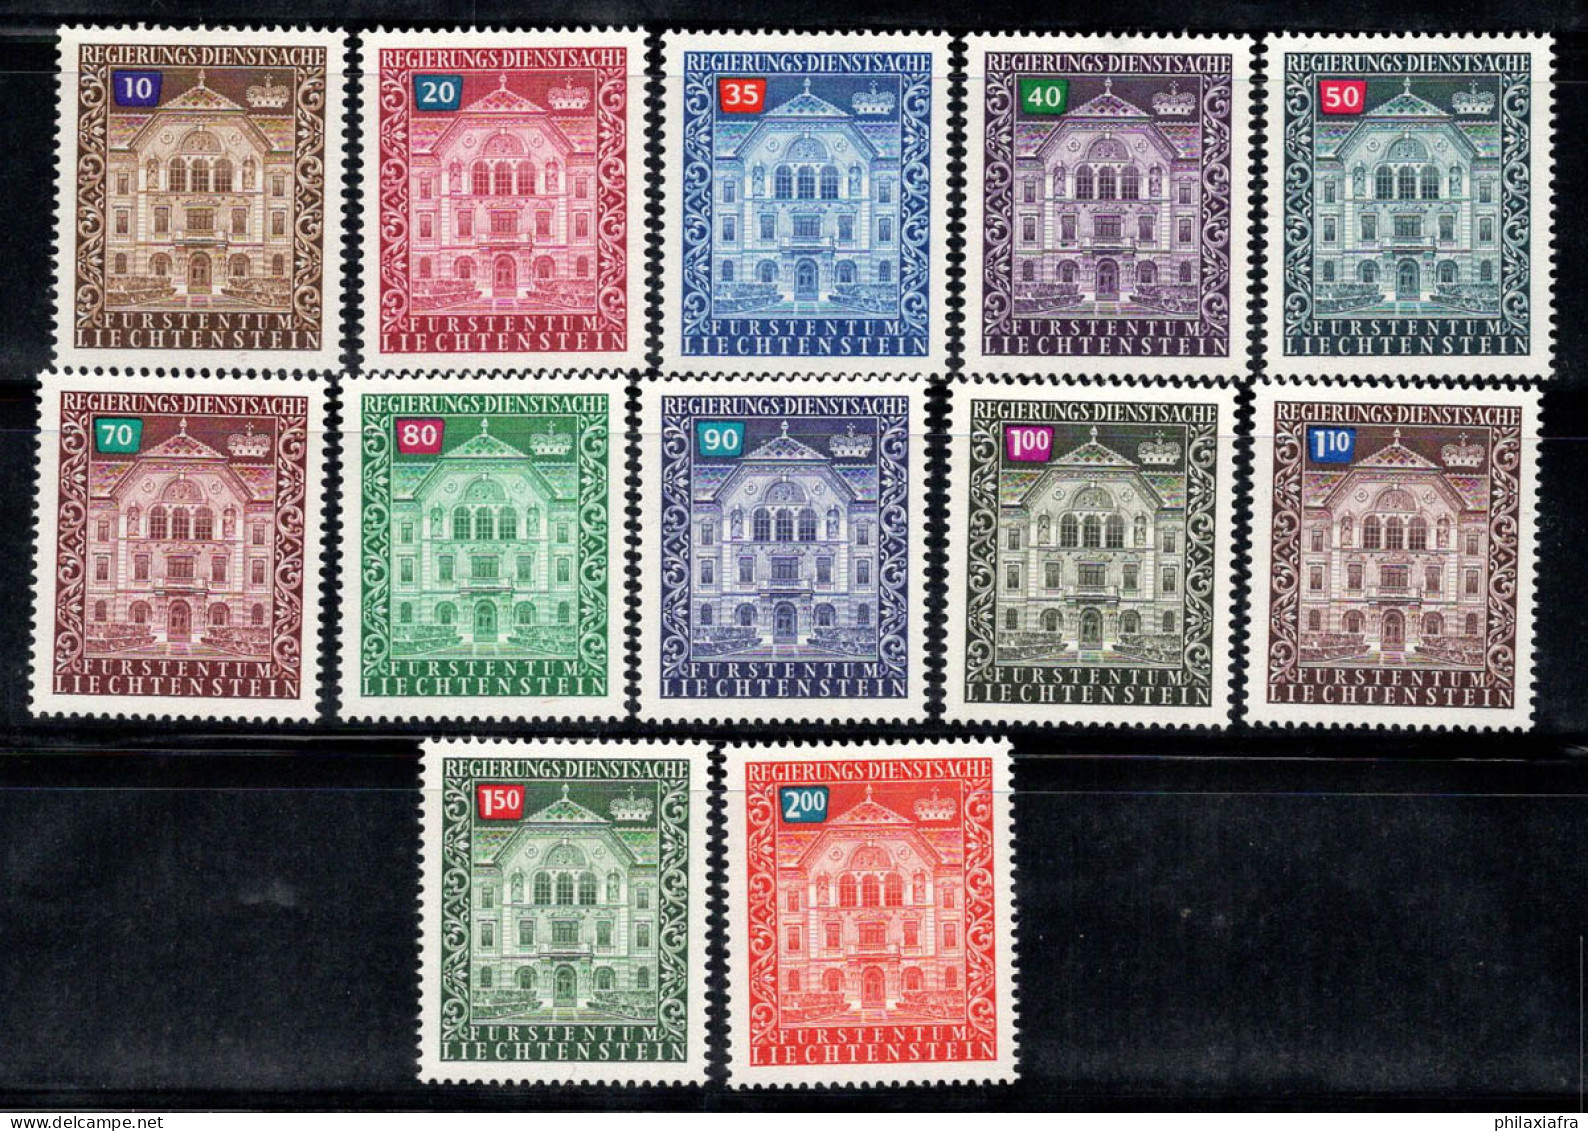 Liechtenstein 1976 Mi. 57-68 Neuf ** 80% Service Édifice Gouvernemental - Dienstmarken